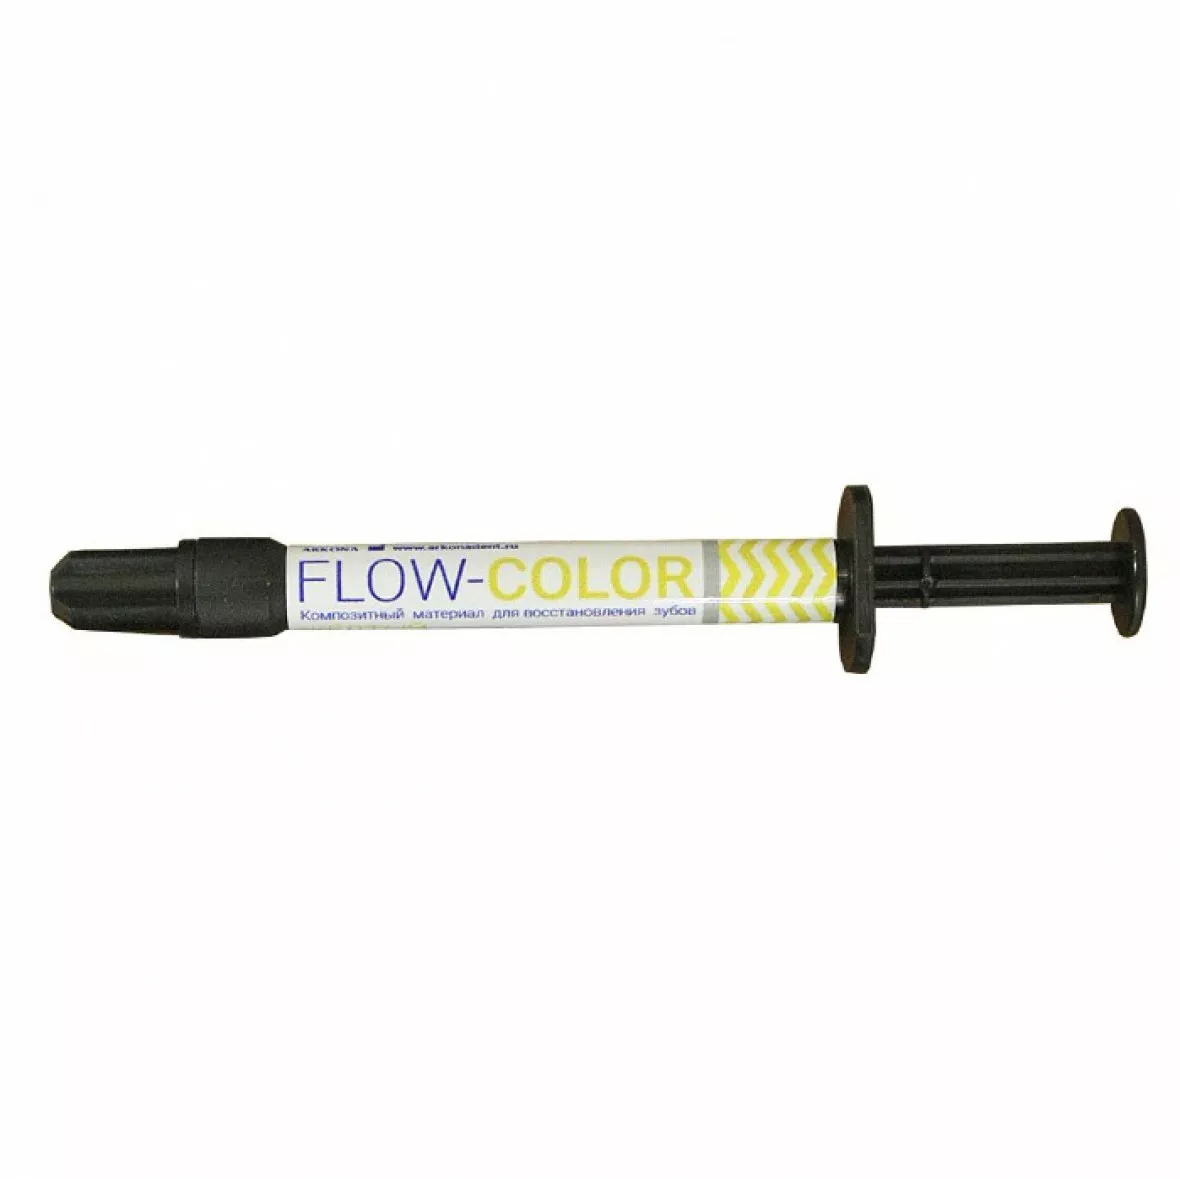 FLOW-COLOR - цветной композит, Желтый